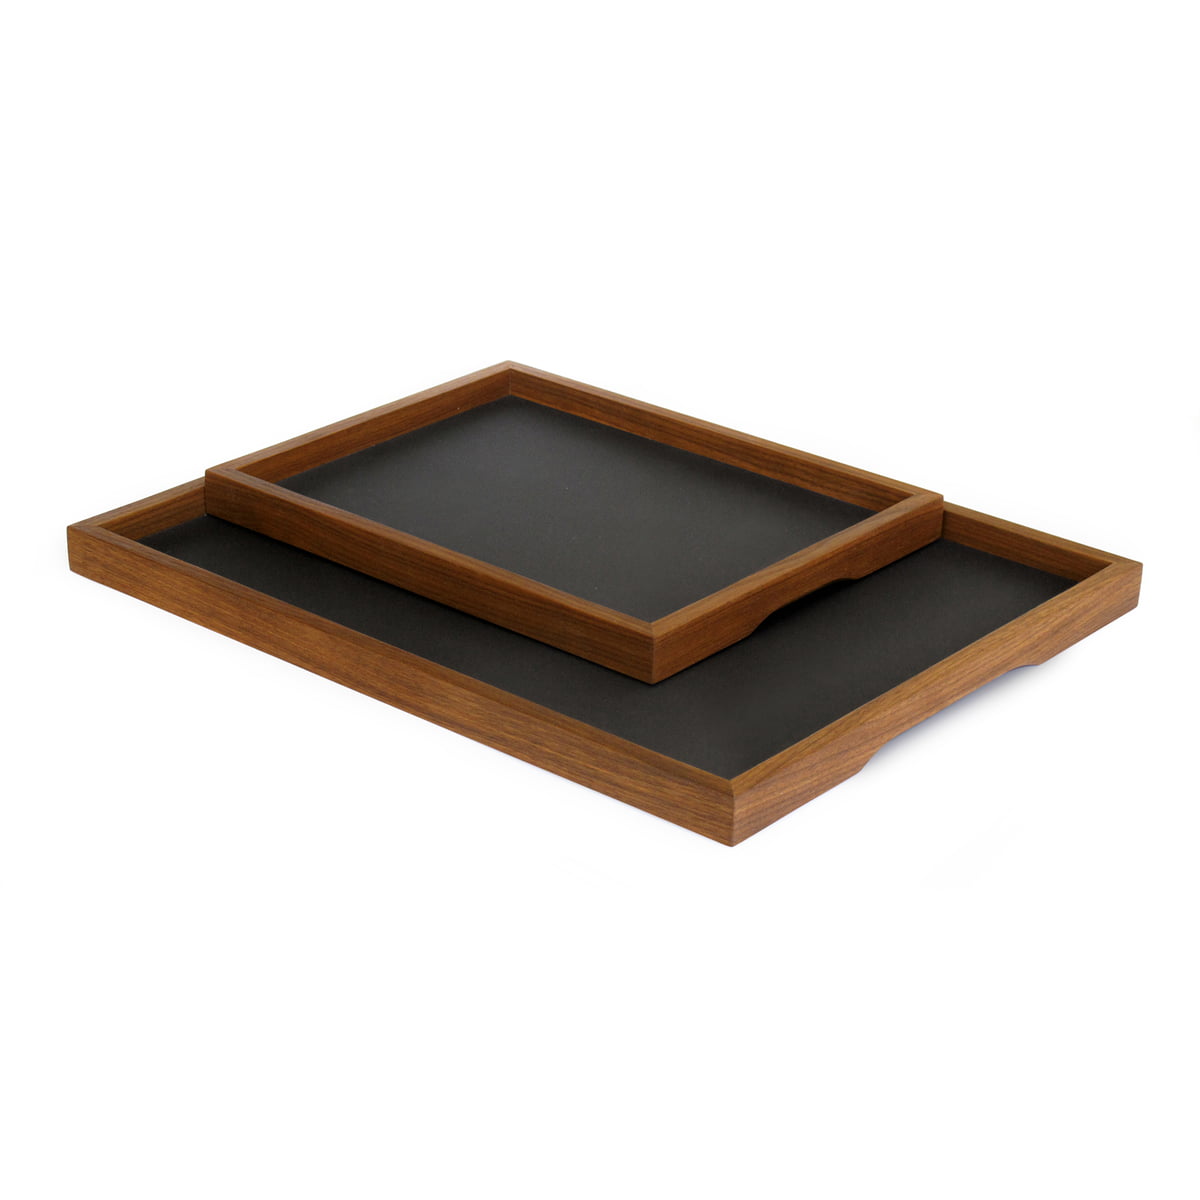 Minibar auf Tablett mit Cocktailzubehör … – Bild kaufen – 11453279 ❘  living4media